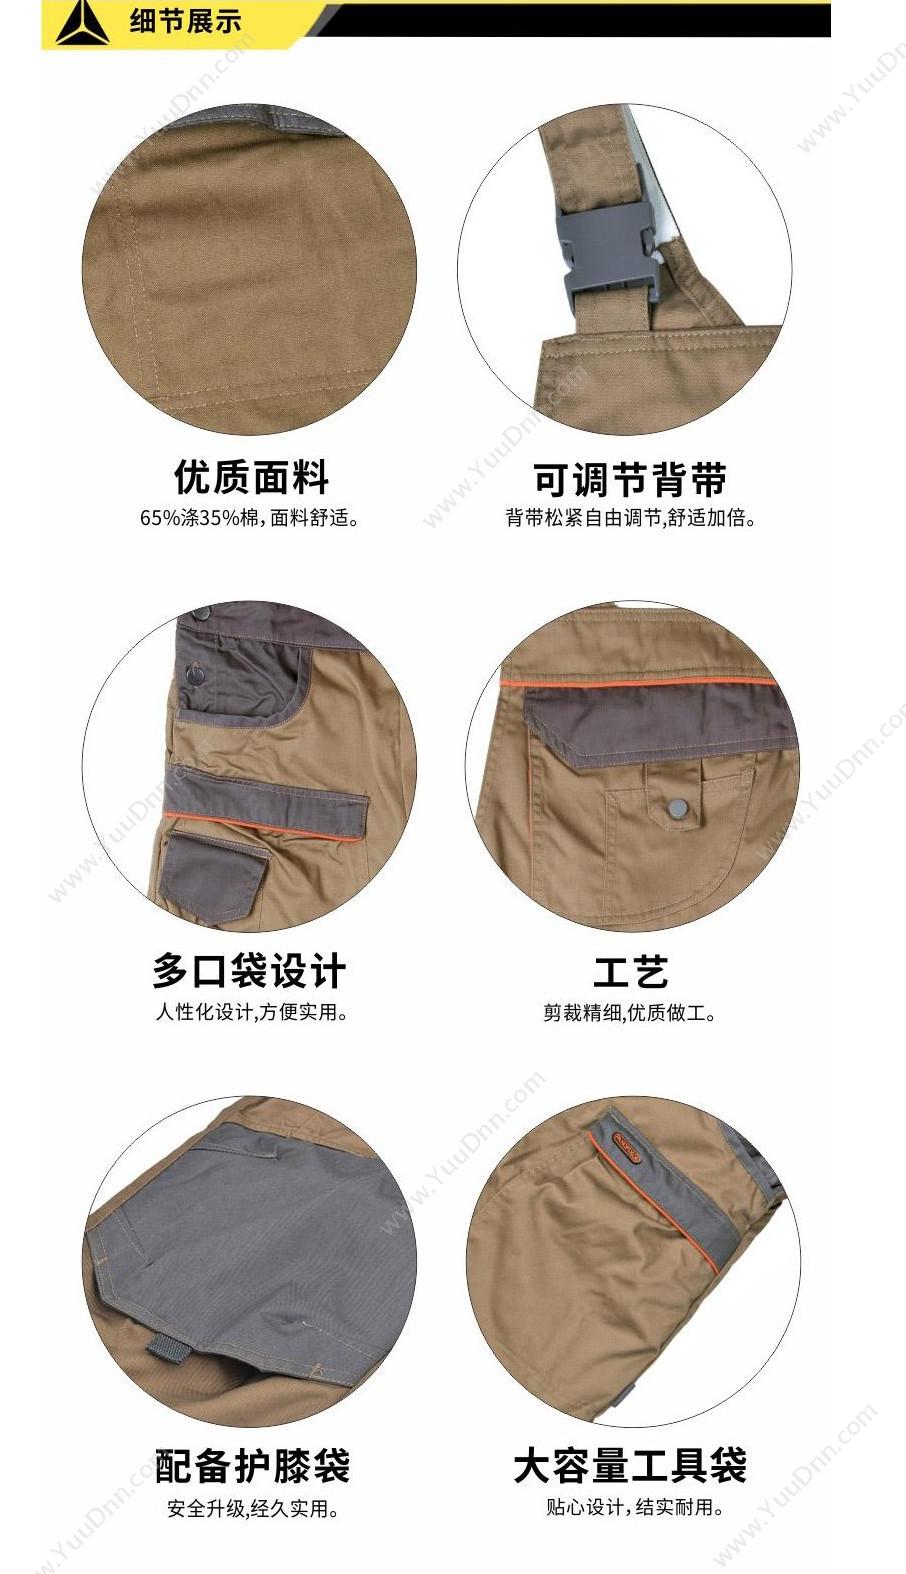 代尔塔 Delta 405348 马克企业系列背带裤 MCSAL/S（藏青） 背带裤